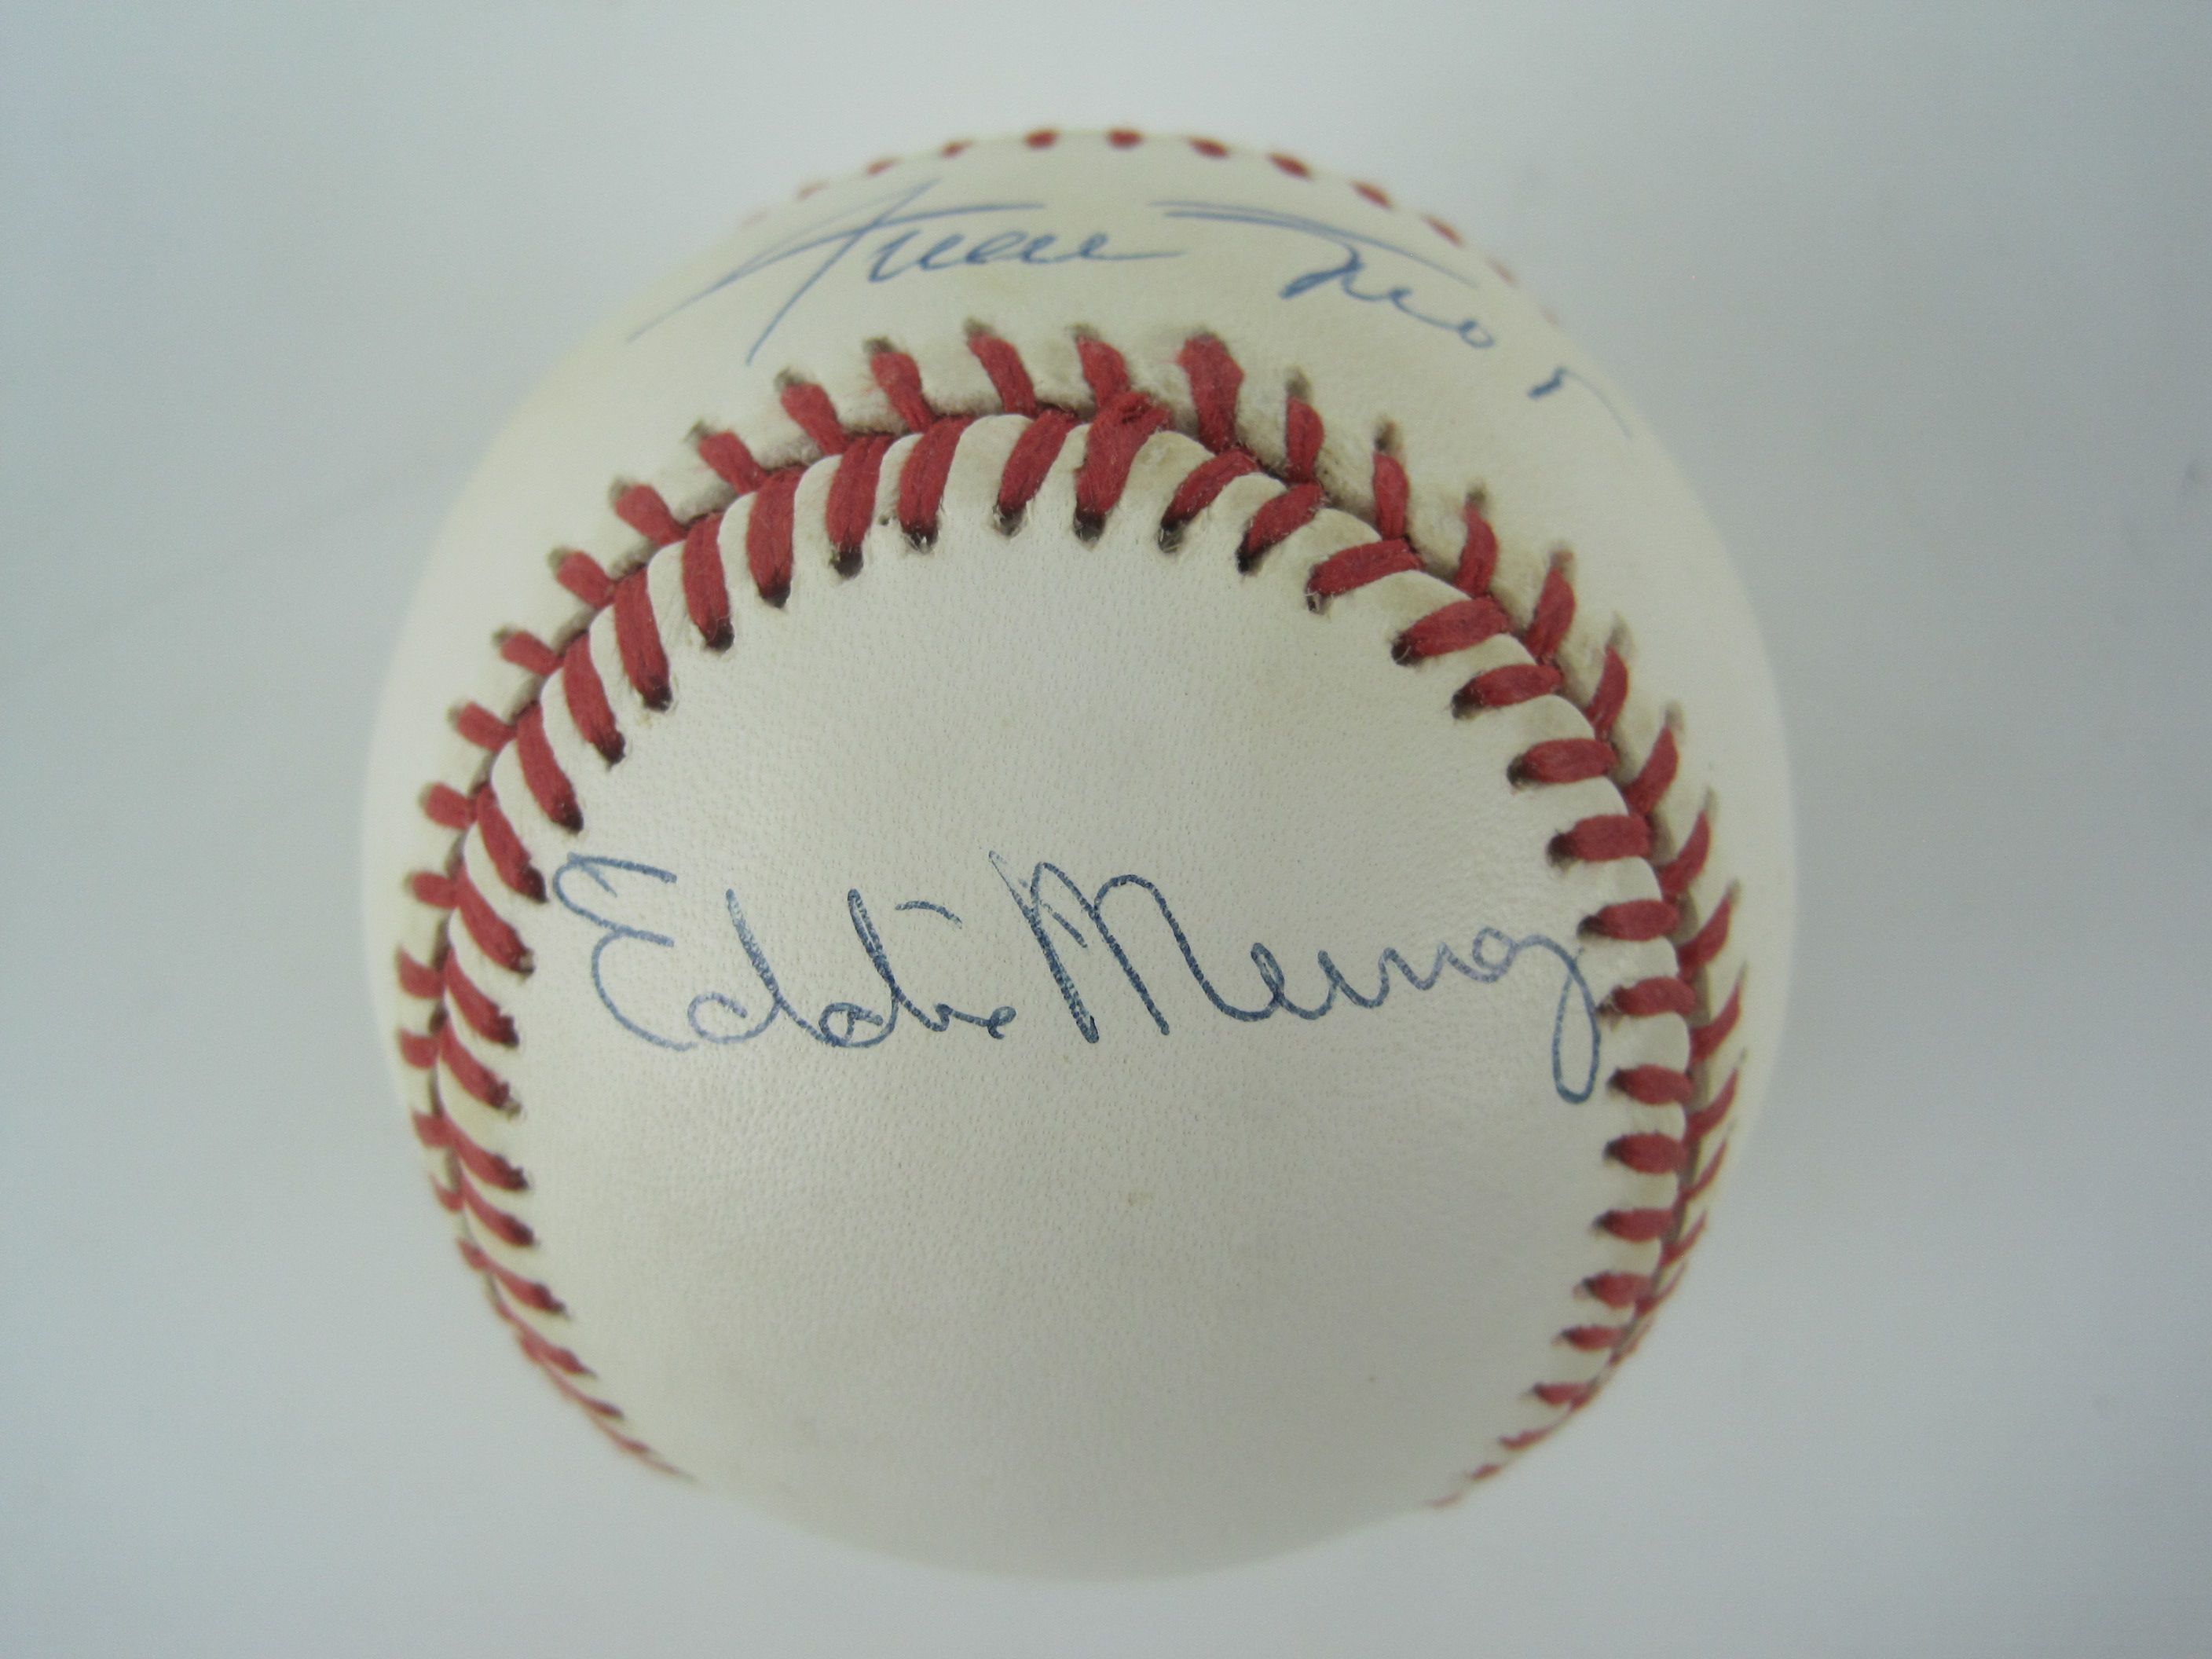 eddie murray autographed baseball